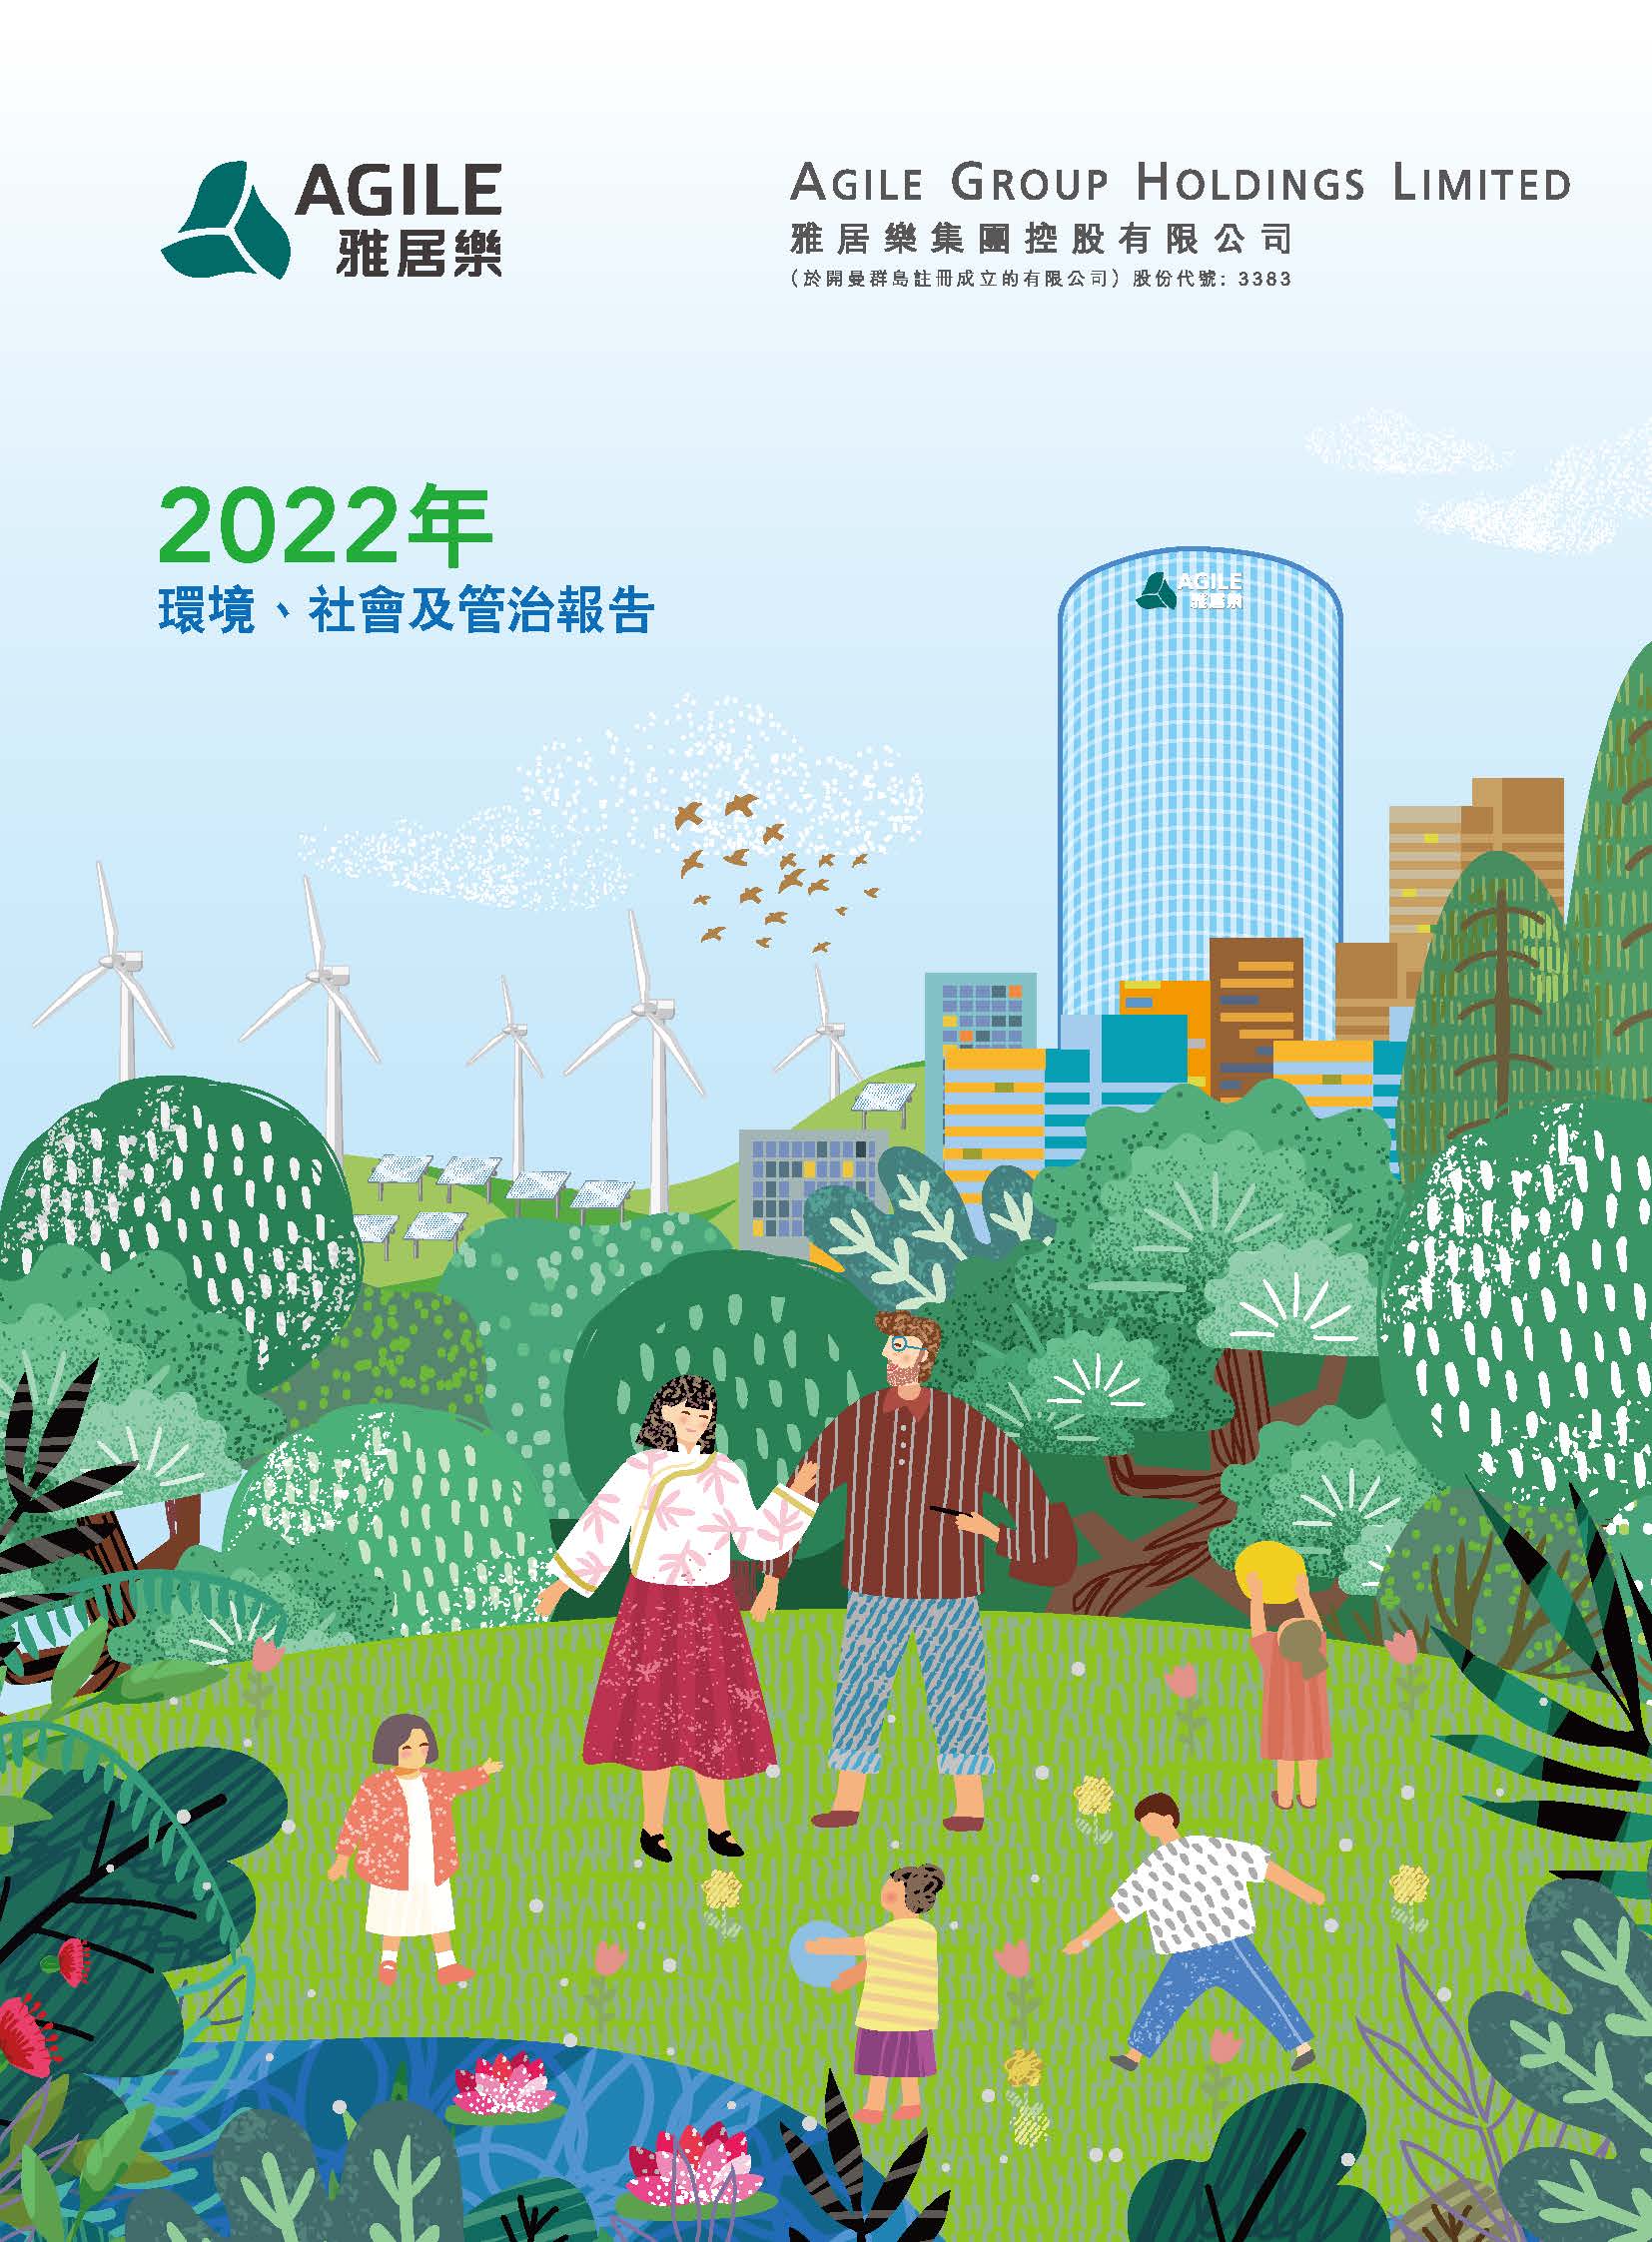 2022年环境、社会及管治报告